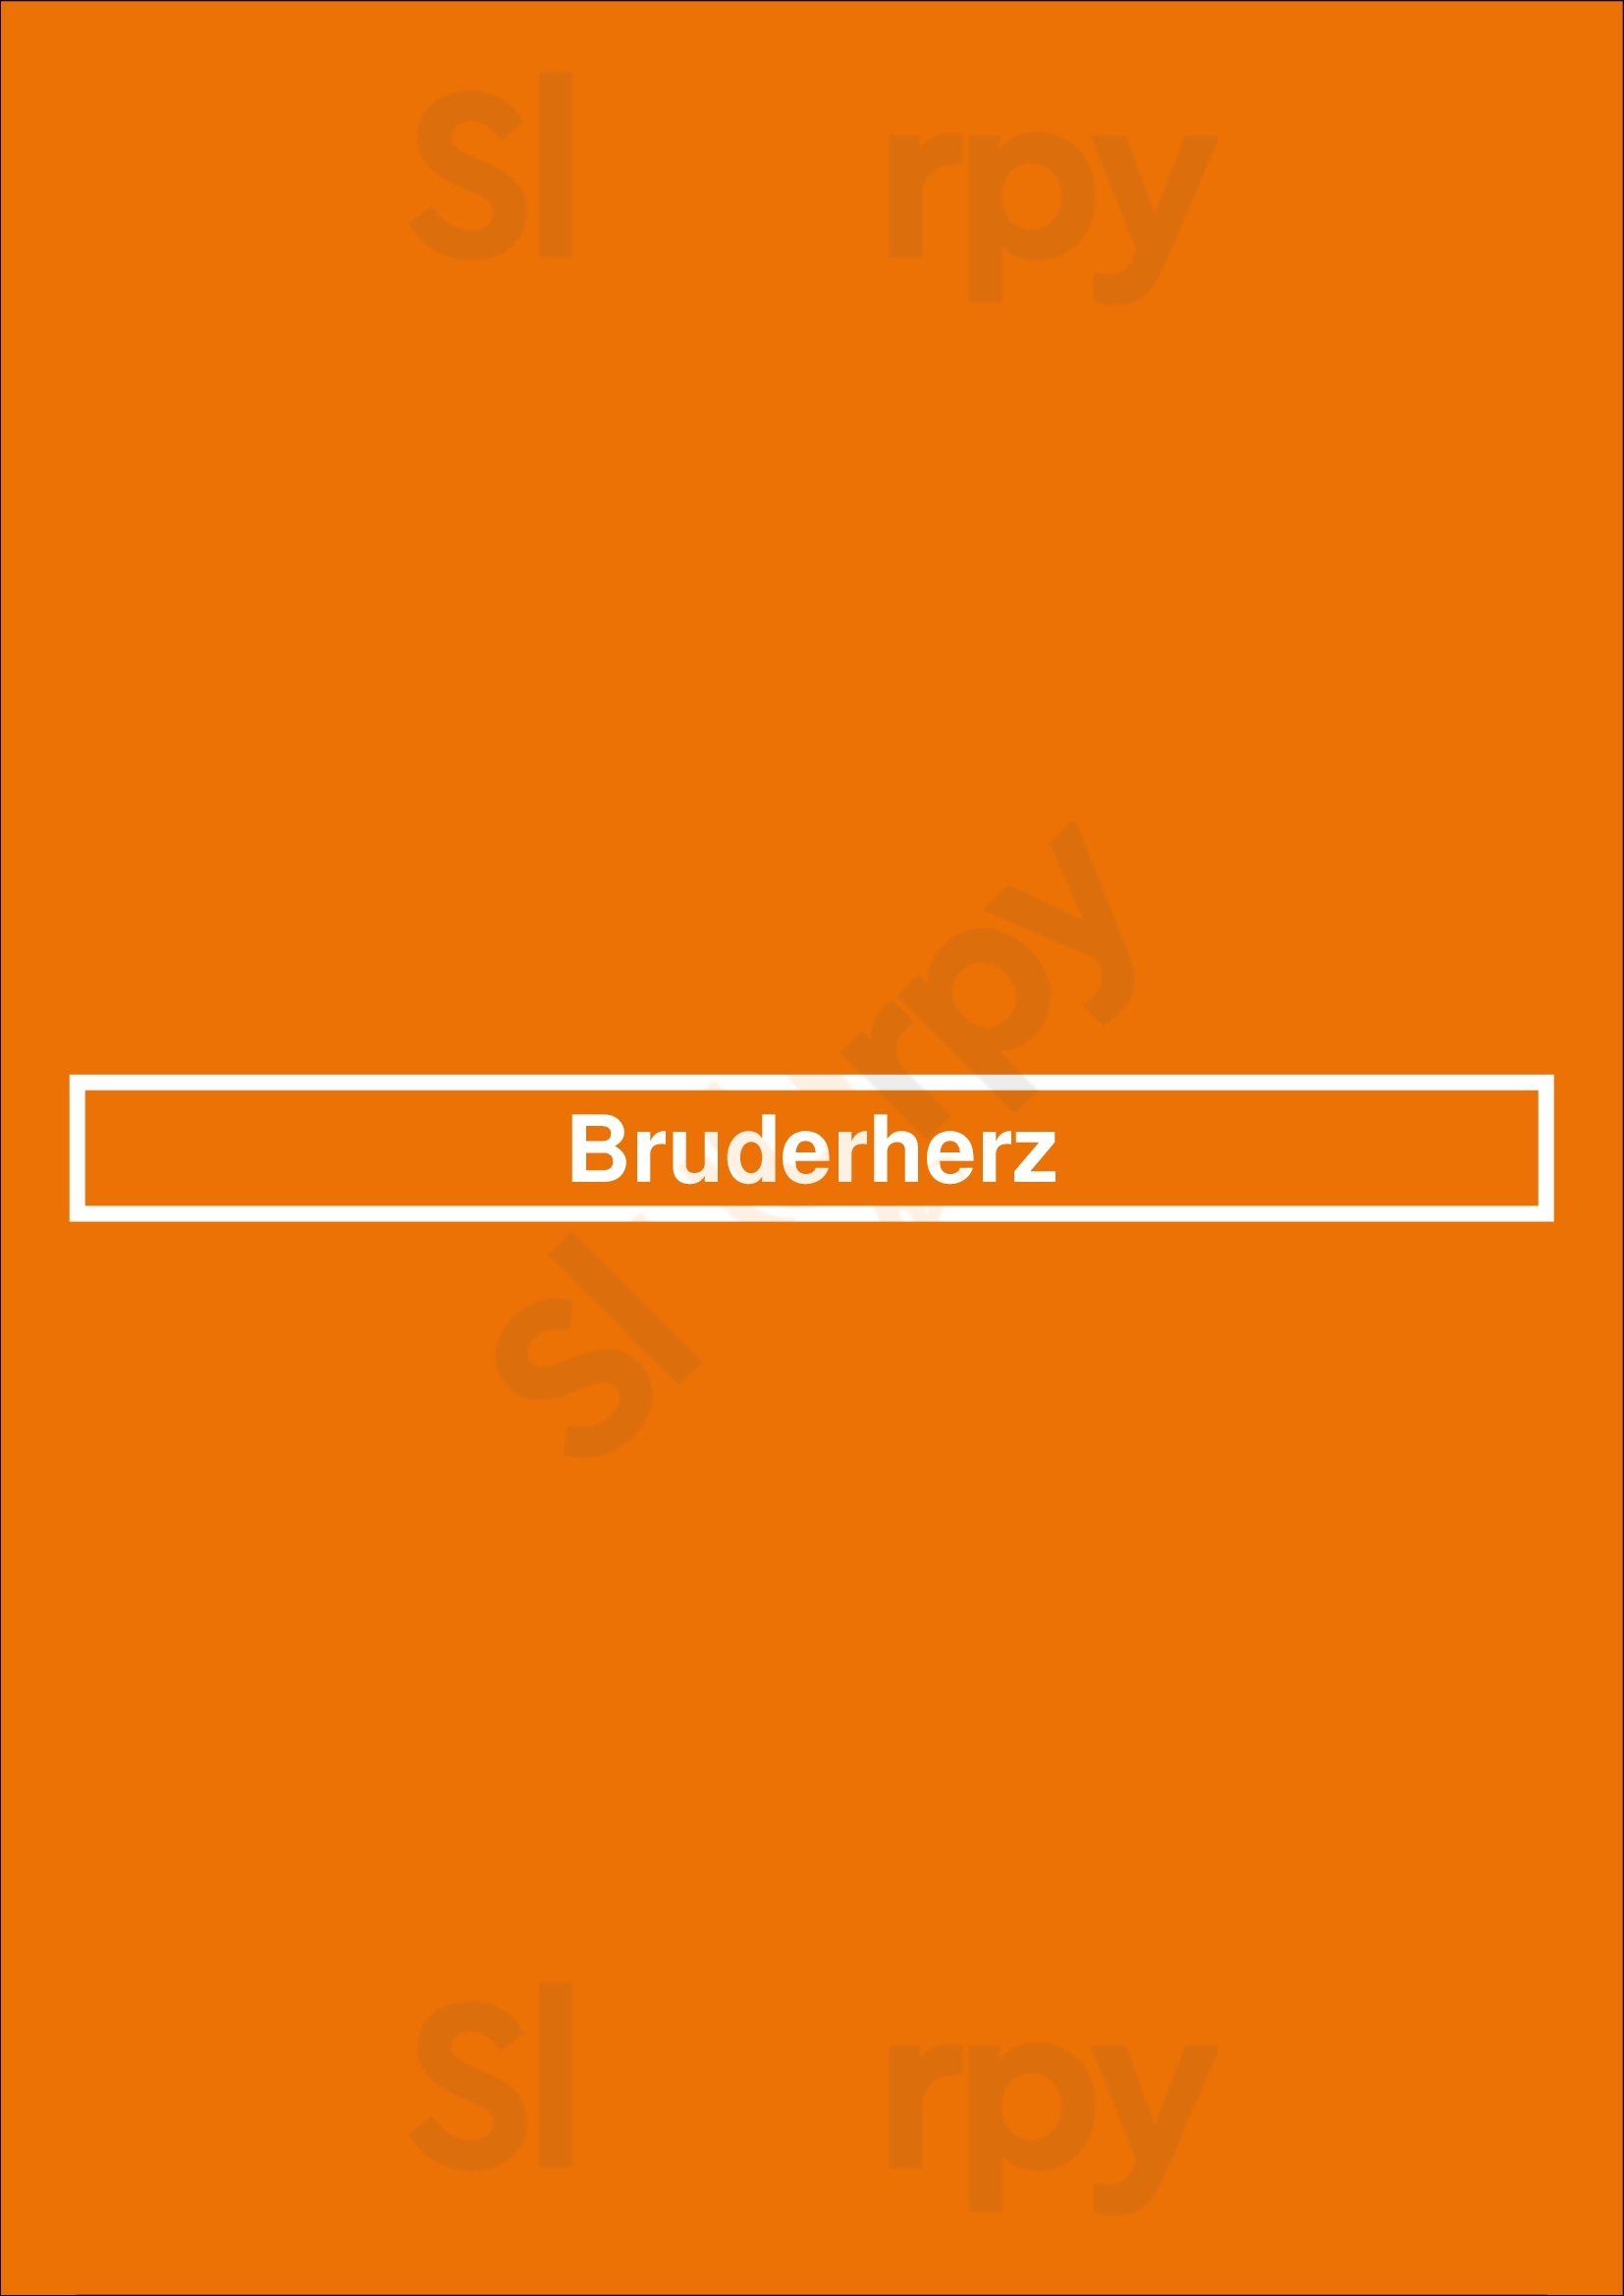 Bruderherz Berlin Menu - 1